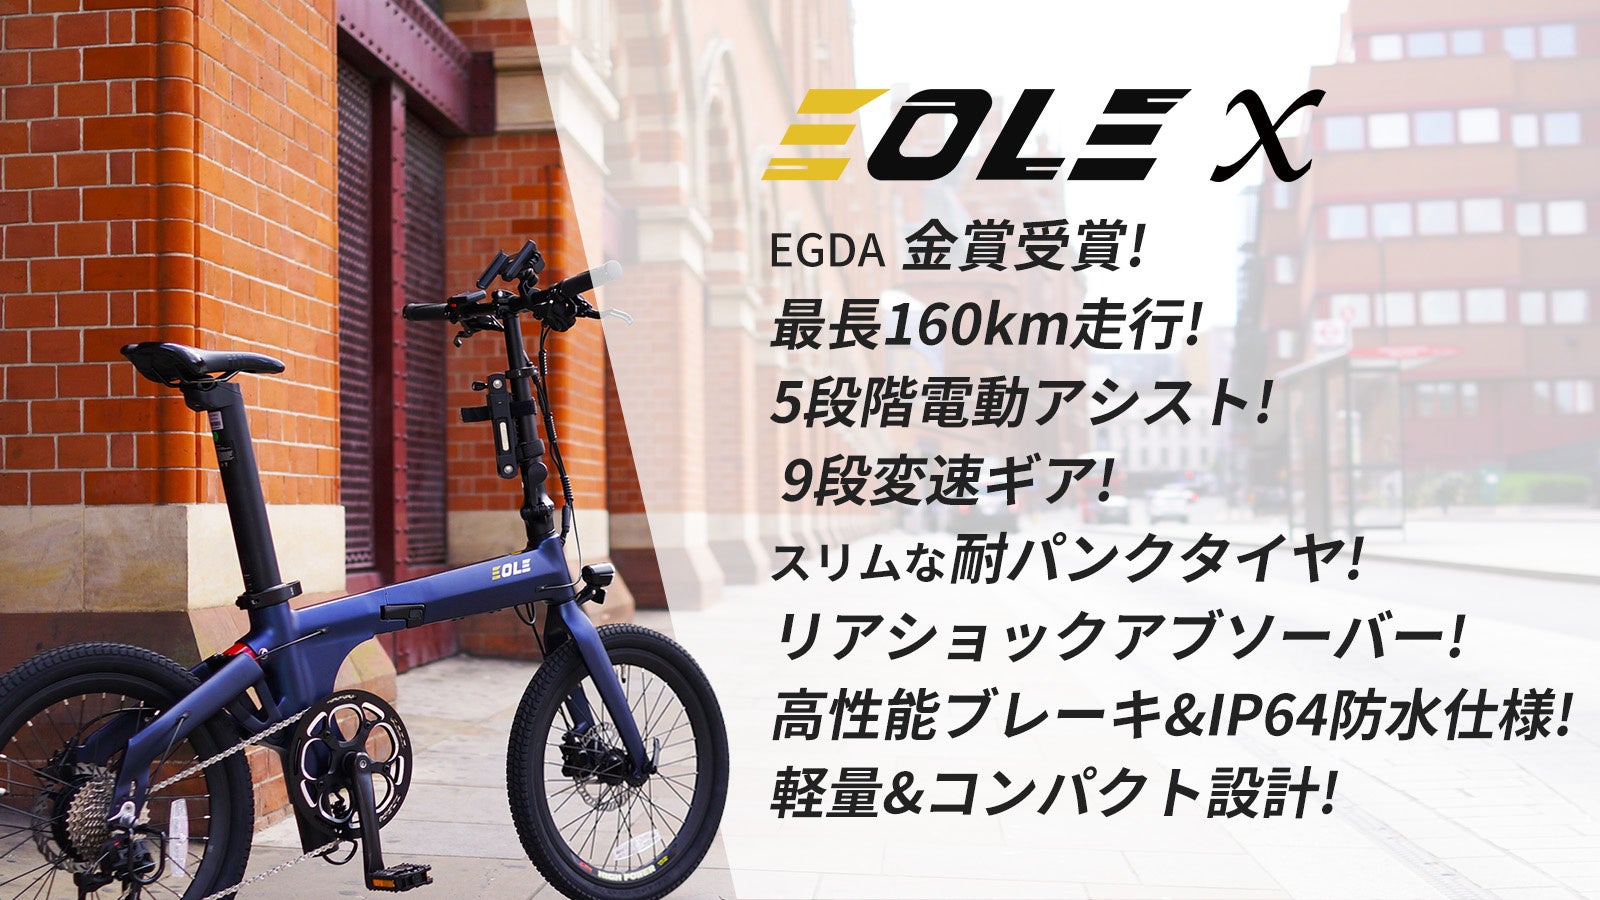 今ヨーロッパで話題の美しいデザインと高性能を兼ね備えた、近未来型折り畳み電動自転車！「Morfuns EOLE X」が応援購入サイトMakuakeにて日本初登場のサブ画像2